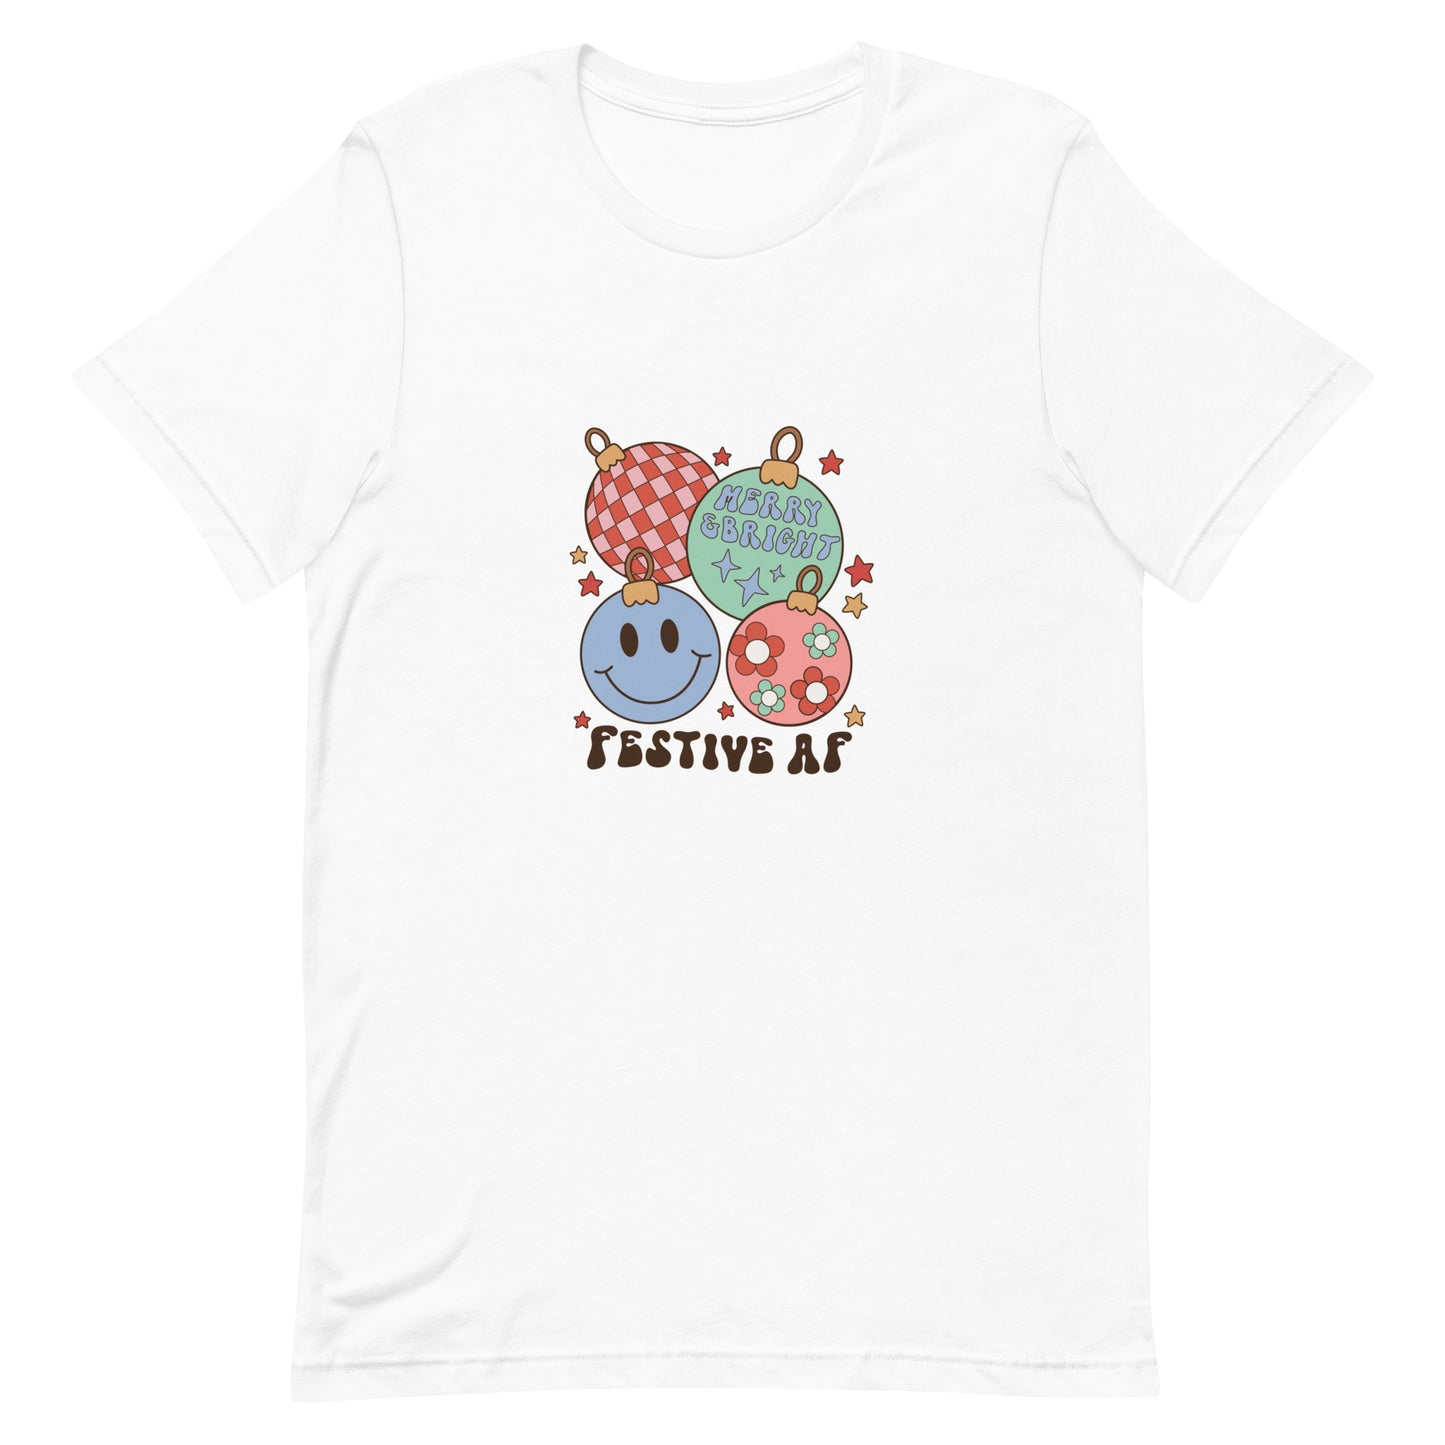 Festive AF Unisex T-shirt